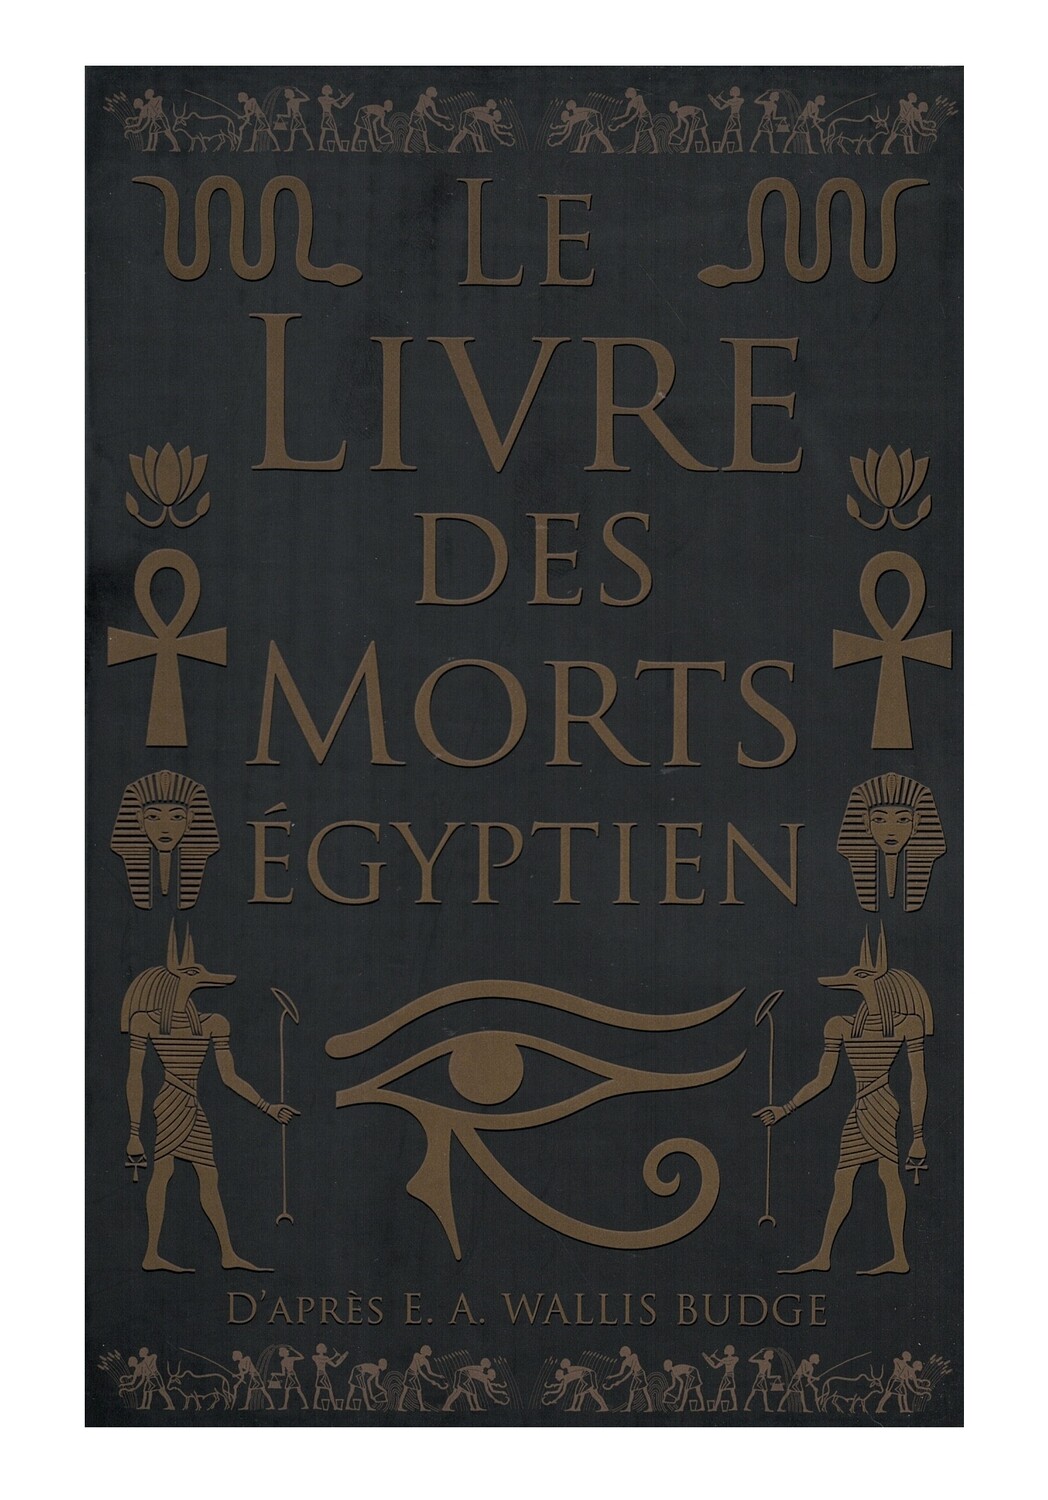 Le livre des morts egyptien